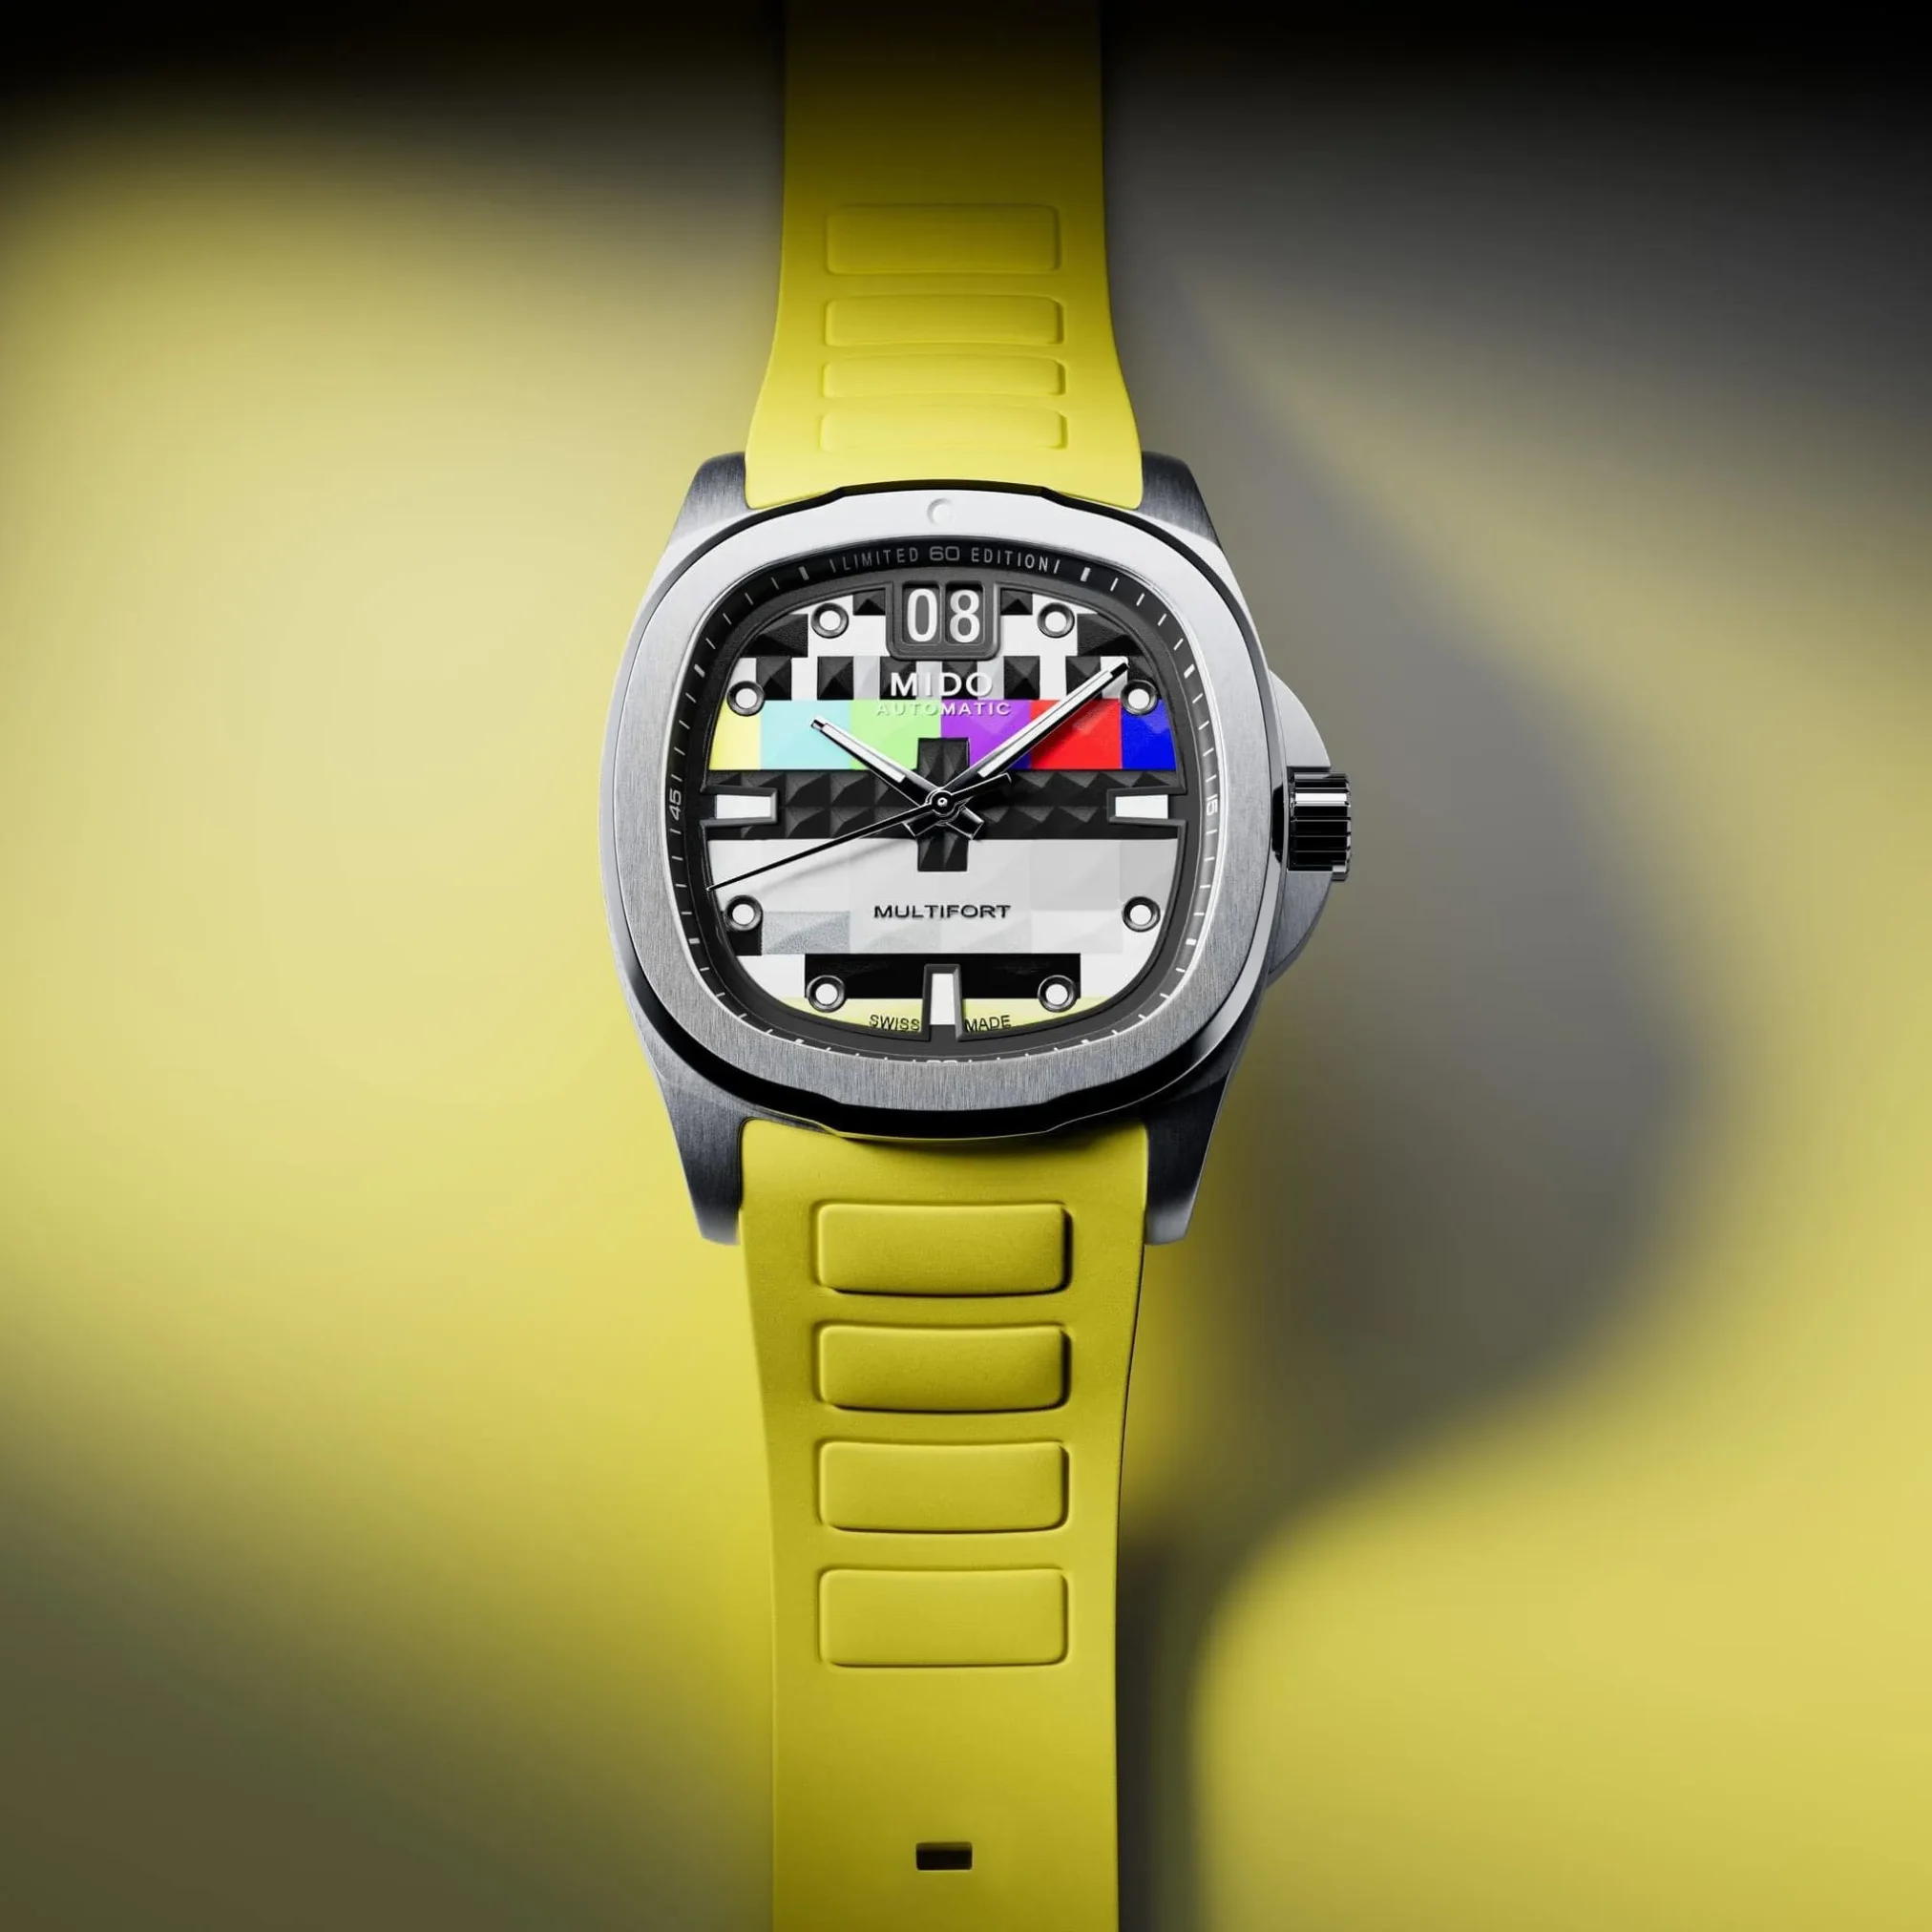 Đồng hồ Mido Multifort TV Big Date Limited Edition M049.526.11.081.01 mặt số đa màu. Dây đeo bằng thép và cao su. Thân vỏ bằng thép.